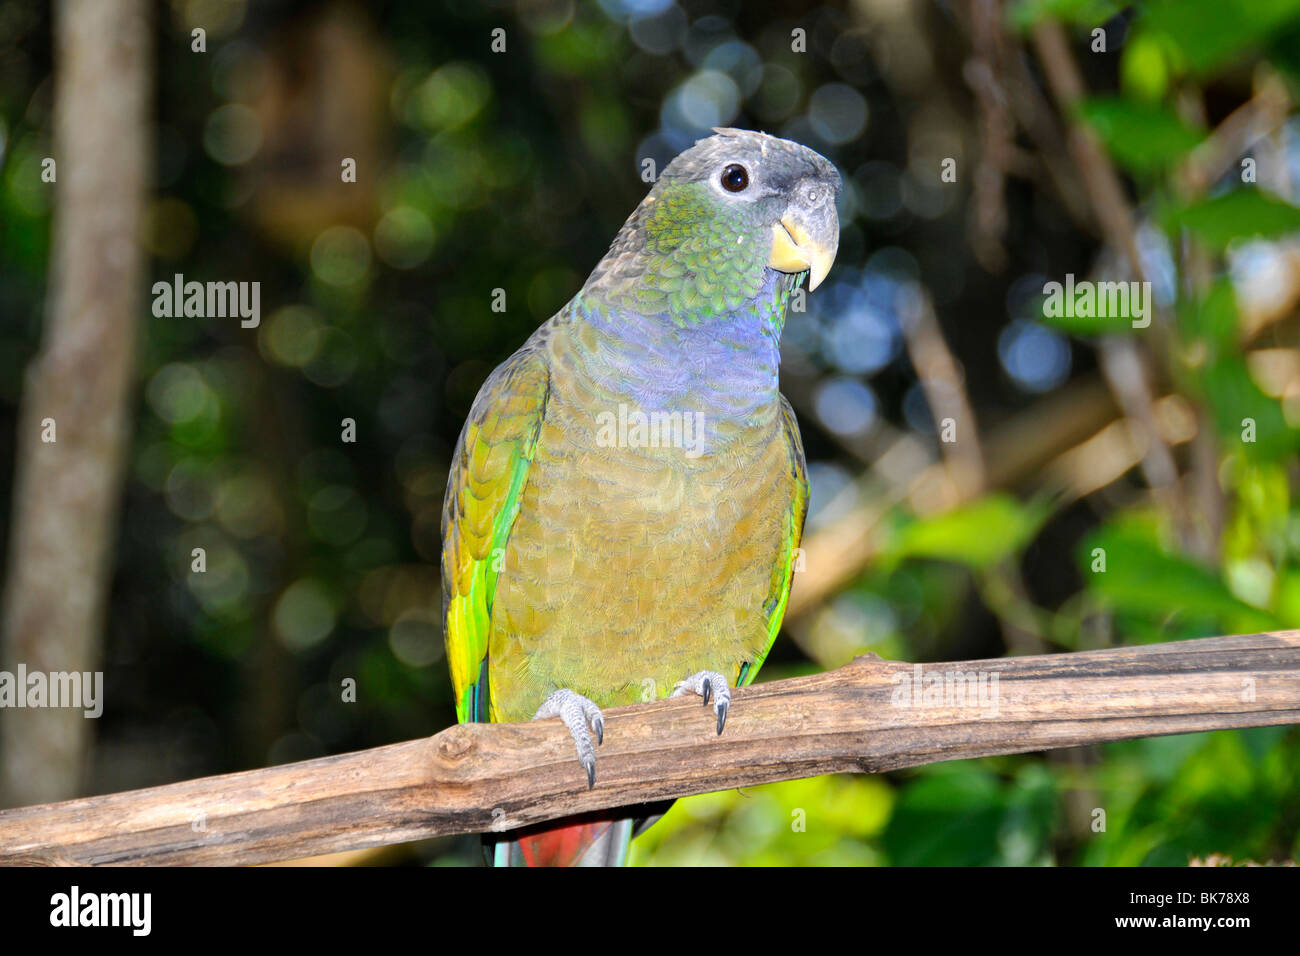 Scaly-headed parrot, Pionus maximiliani, Foz do Iguaçu, Parana, Brazil Stock Photo